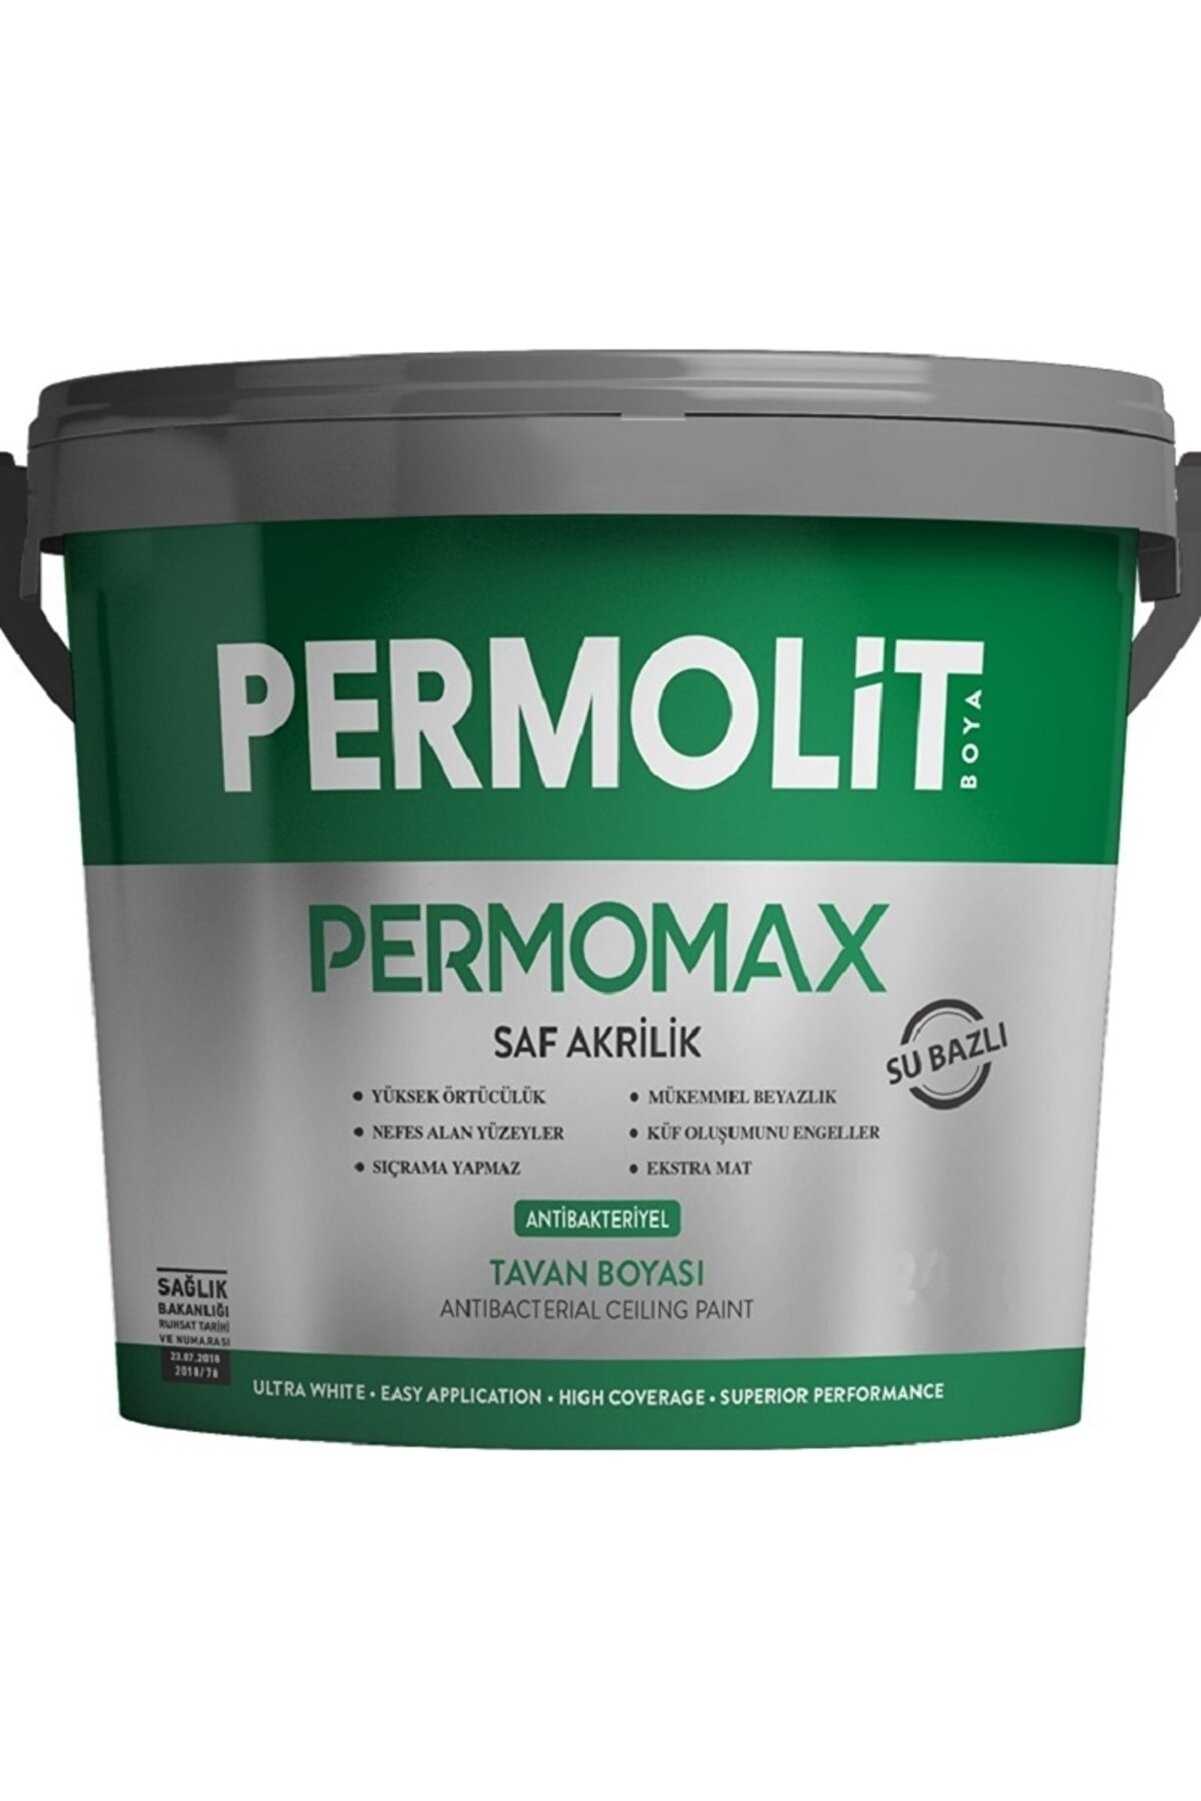 Permolit Permomax Antibakteriyel Küf Önleyici Tavan Boyası 3.5 Kg